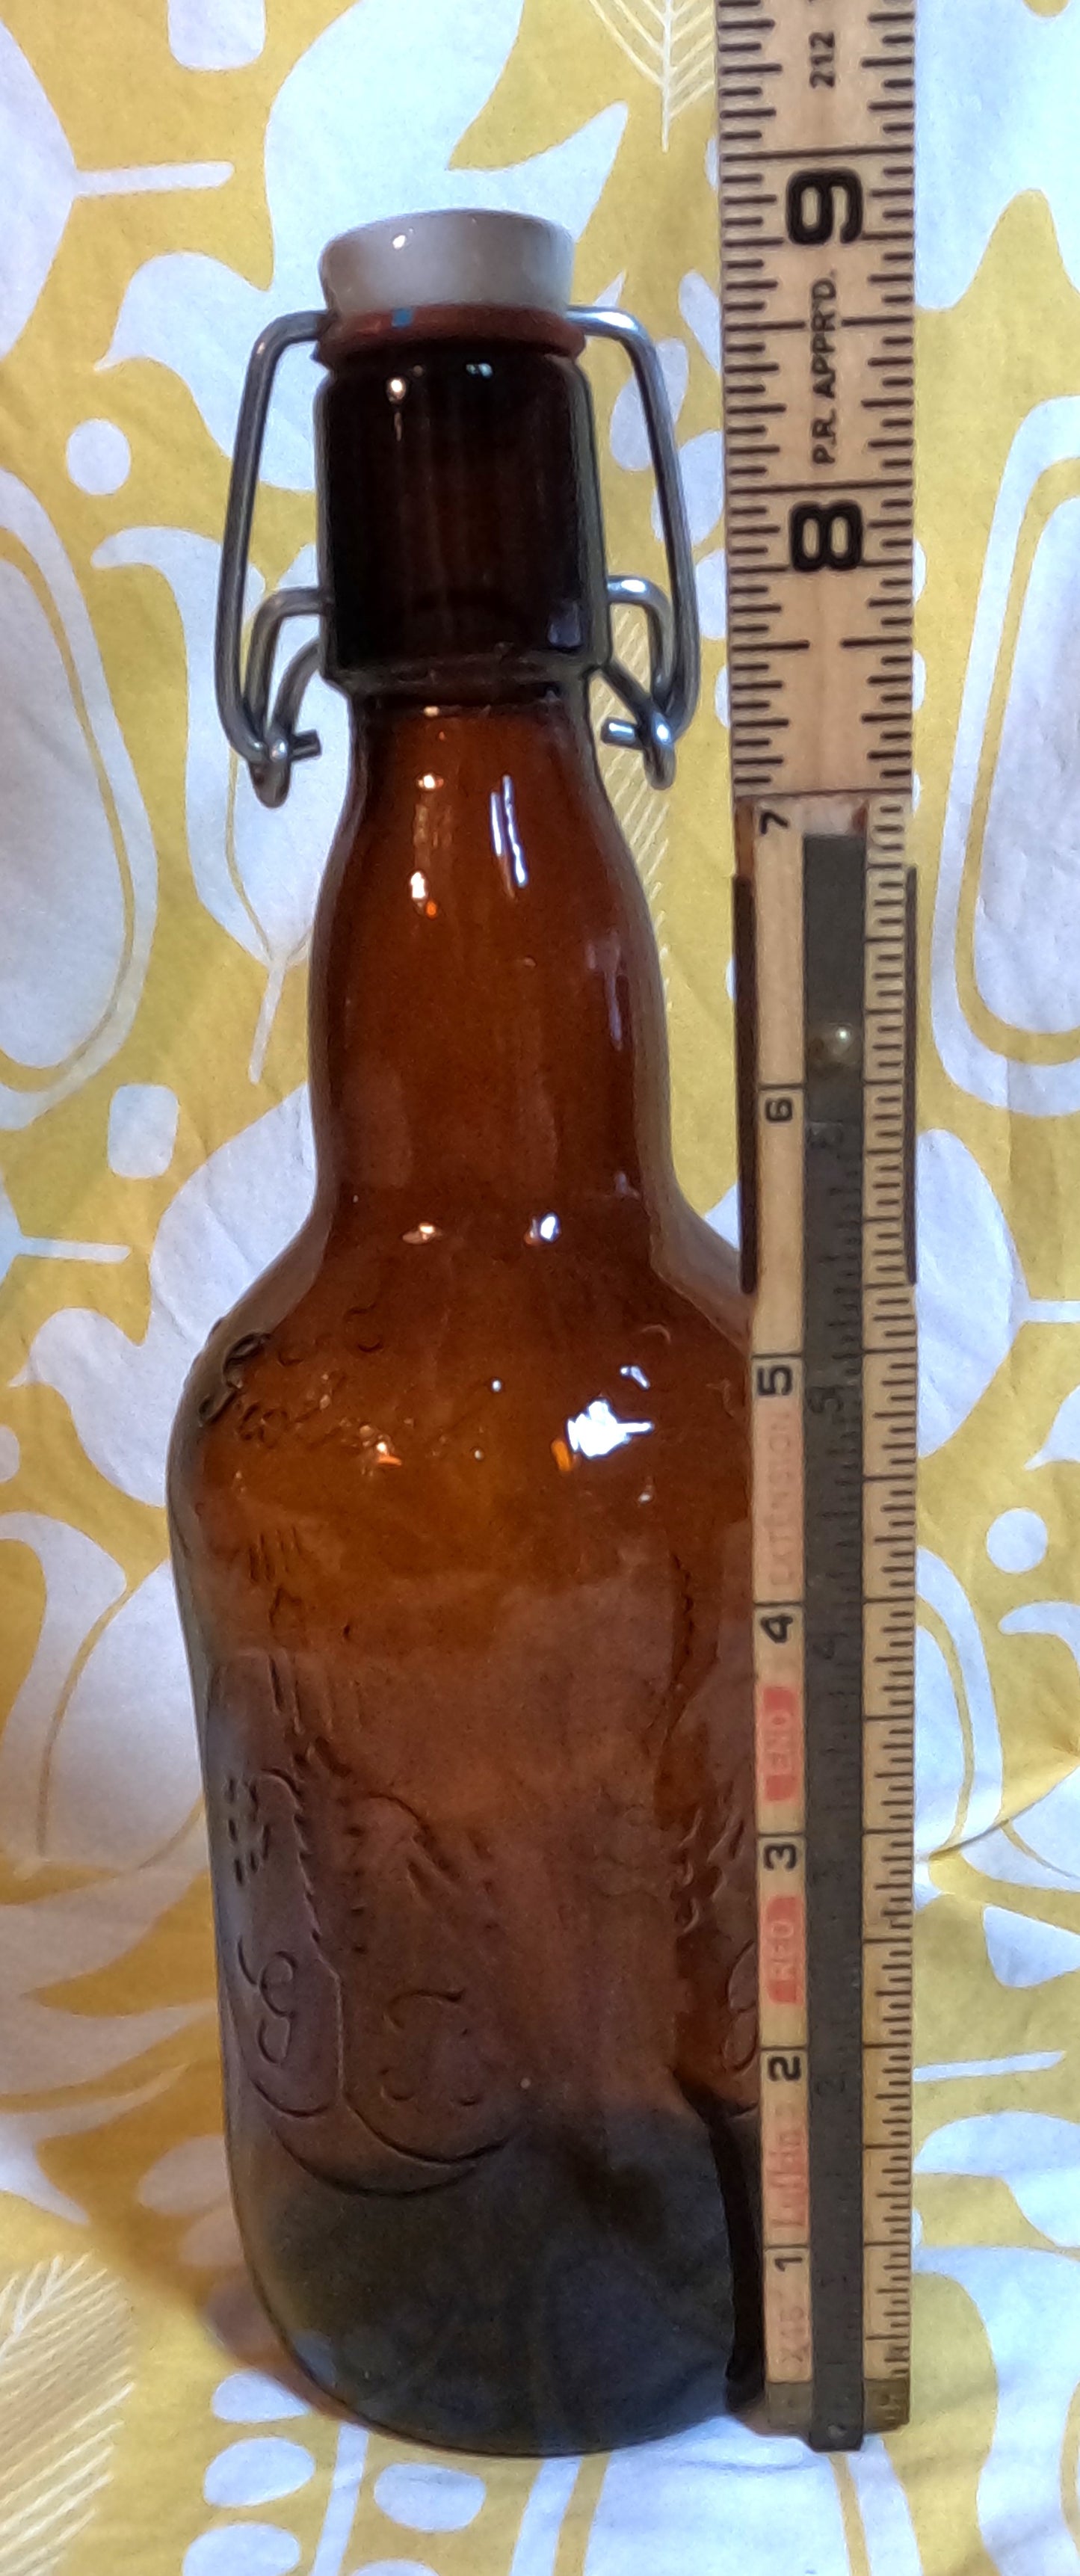 Vintage Grolsch beer bottle with porcelain swing top